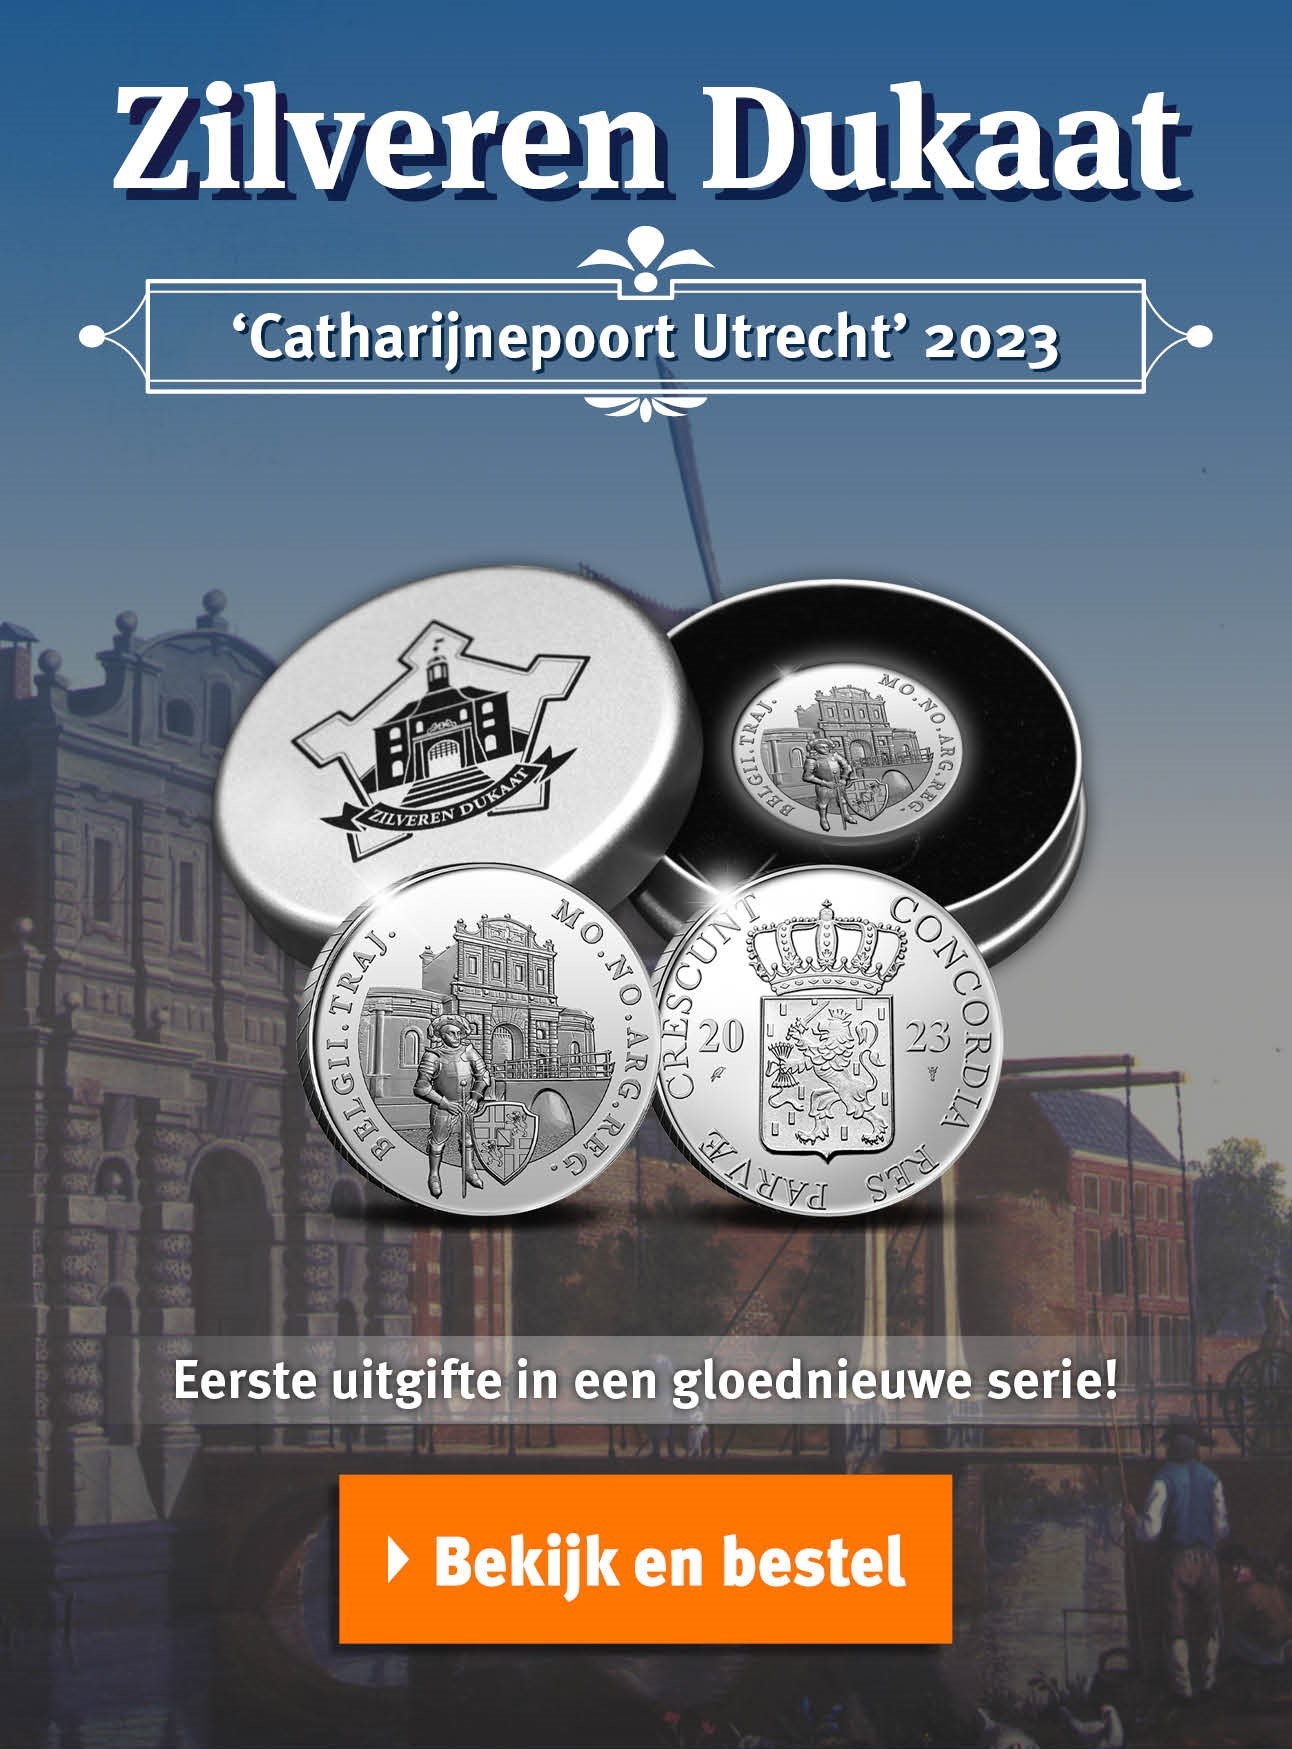 Bekijk en bestel: Zilveren Dukaat ‘Catharijnepoort Utrecht’ 2023